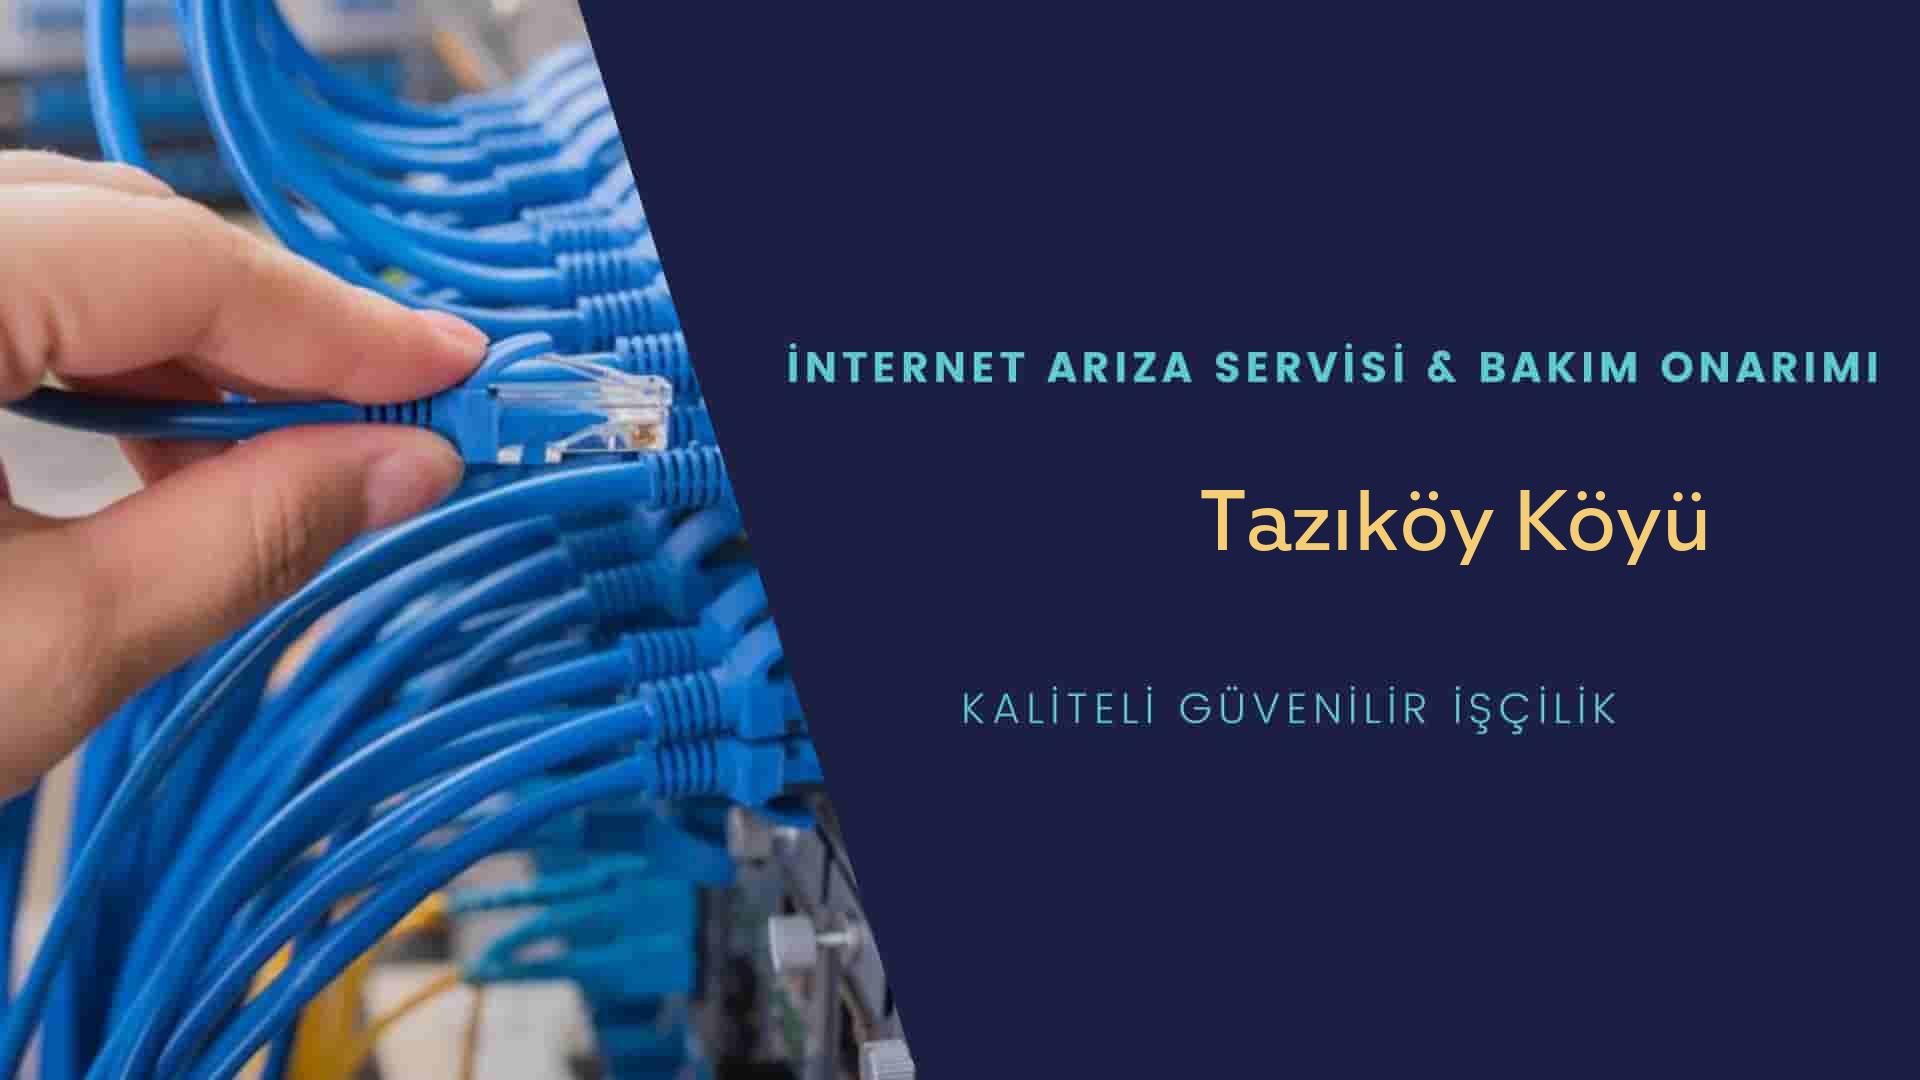 Tazıköy Köyü internet kablosu çekimi yapan yerler veya elektrikçiler mi? arıyorsunuz doğru yerdesiniz o zaman sizlere 7/24 yardımcı olacak profesyonel ustalarımız bir telefon kadar yakındır size.